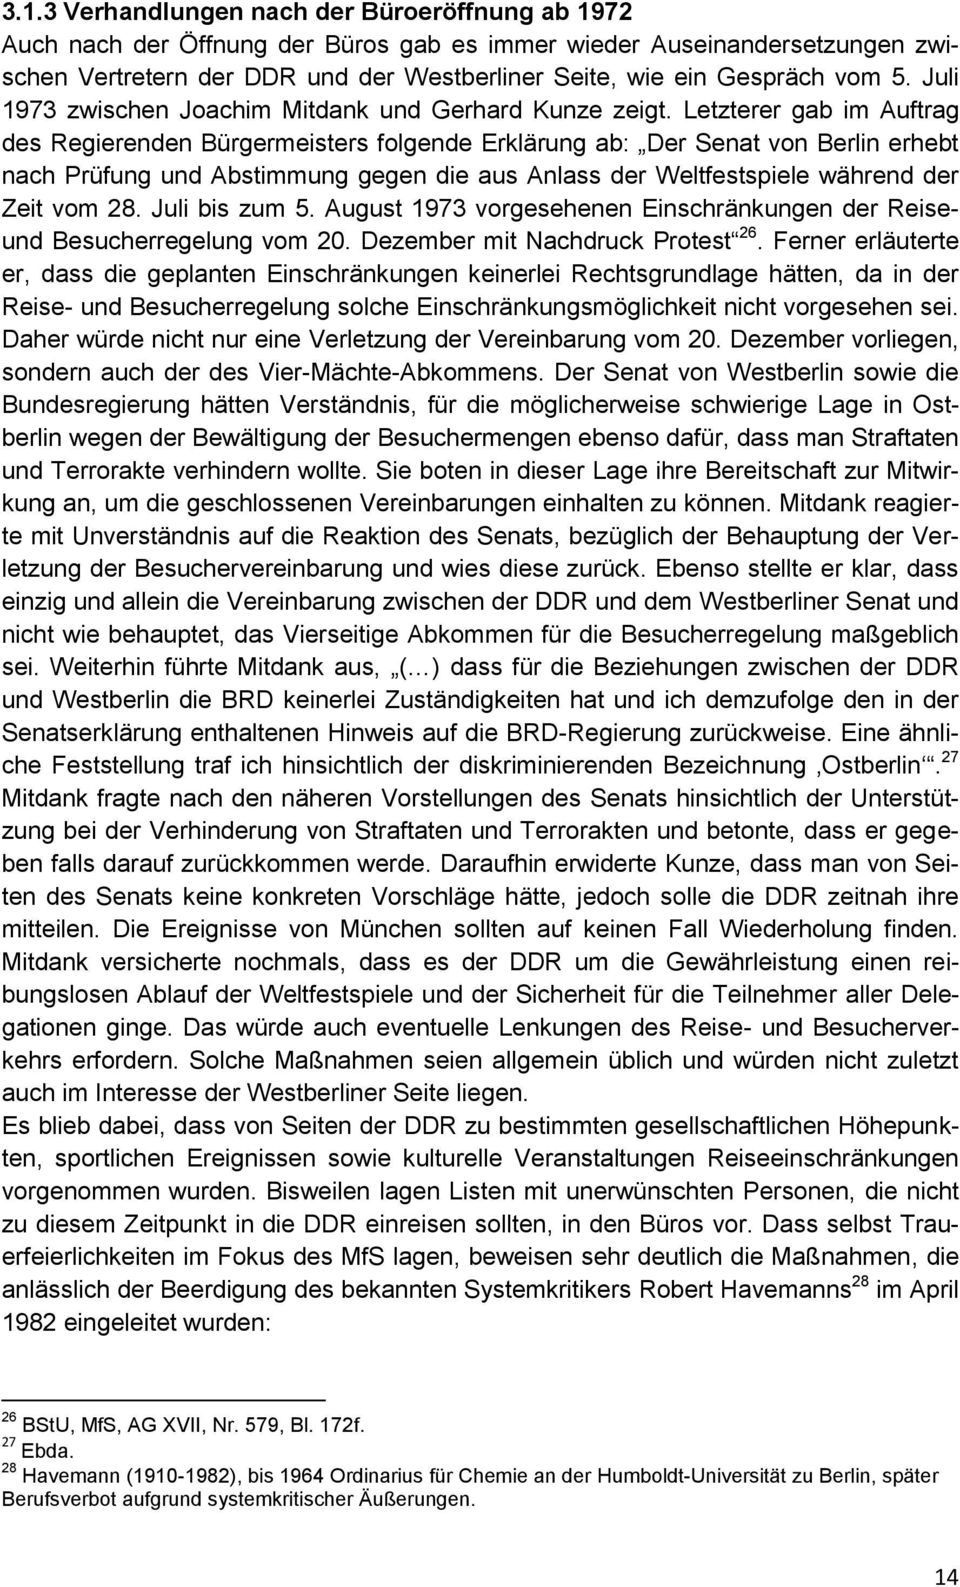 Letzterer gab im Auftrag des Regierenden Bürgermeisters folgende Erklärung ab: Der Senat von Berlin erhebt nach Prüfung und Abstimmung gegen die aus Anlass der Weltfestspiele während der Zeit vom 28.